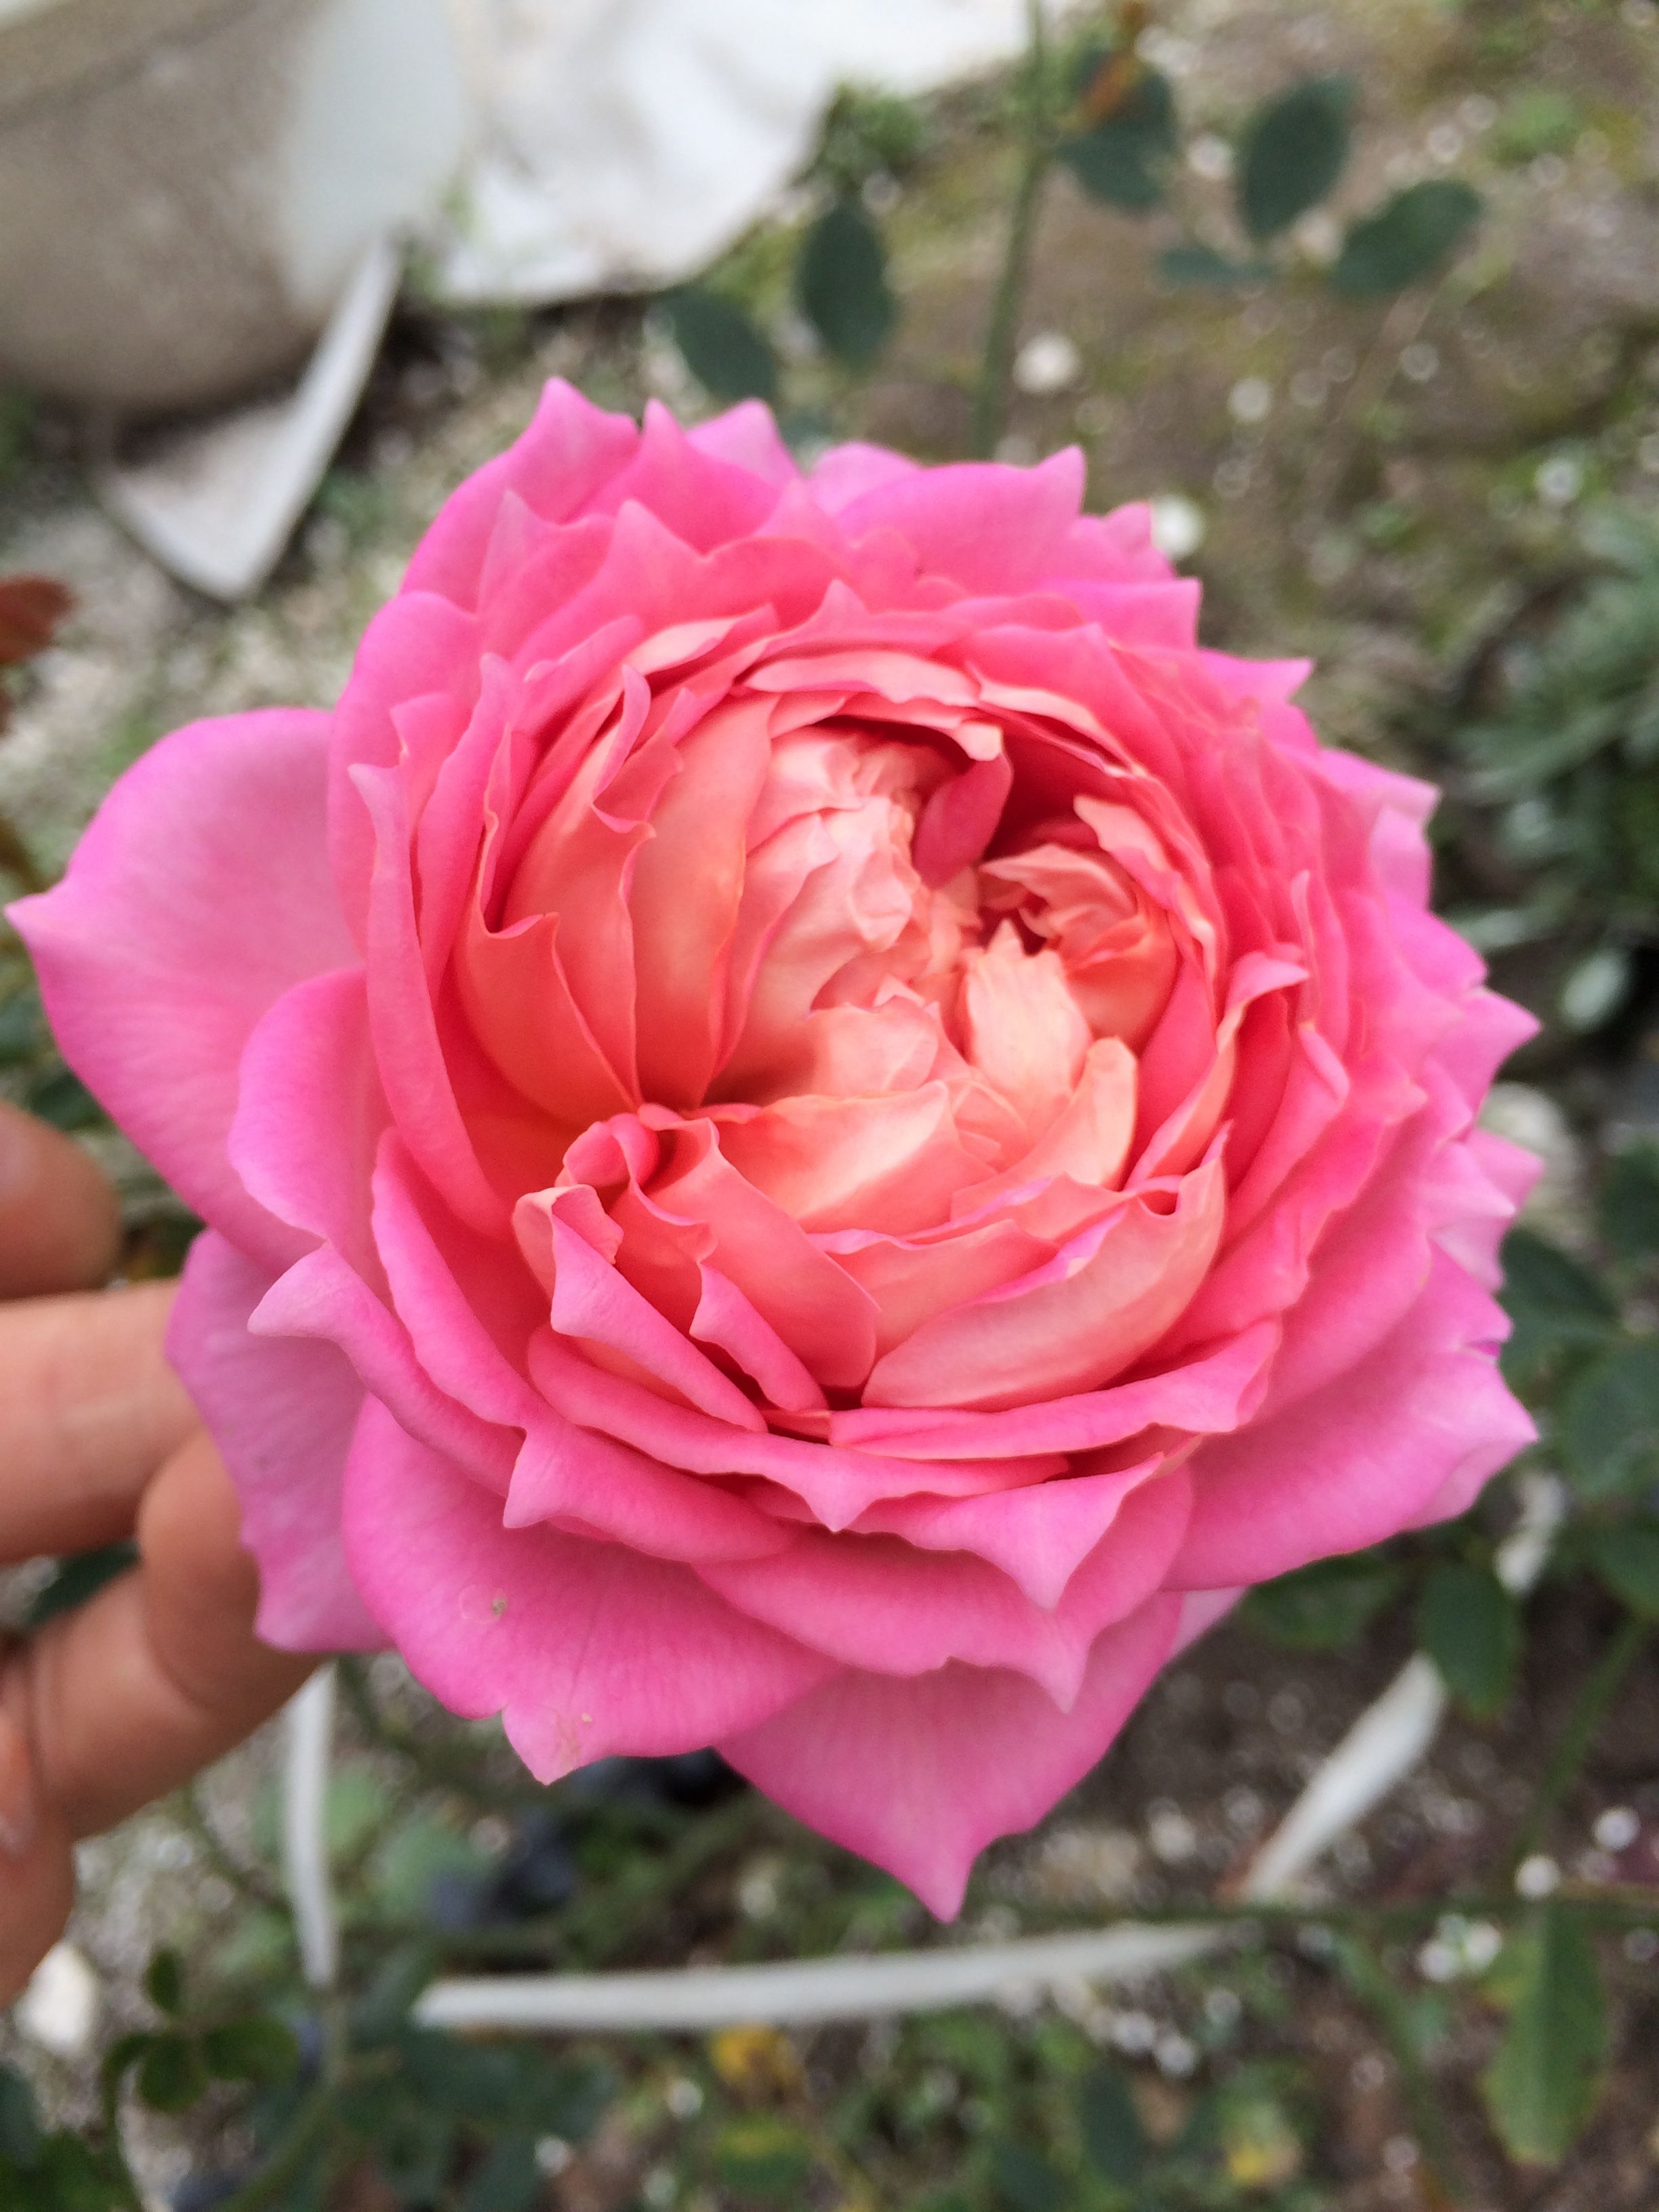 Tuyển tập những hình ảnh hoa hồng đẹp và ý nghĩa của những đóa hoa hồng có thể chưa biết - [Kích thước hình ảnh: 2448x3264 px]